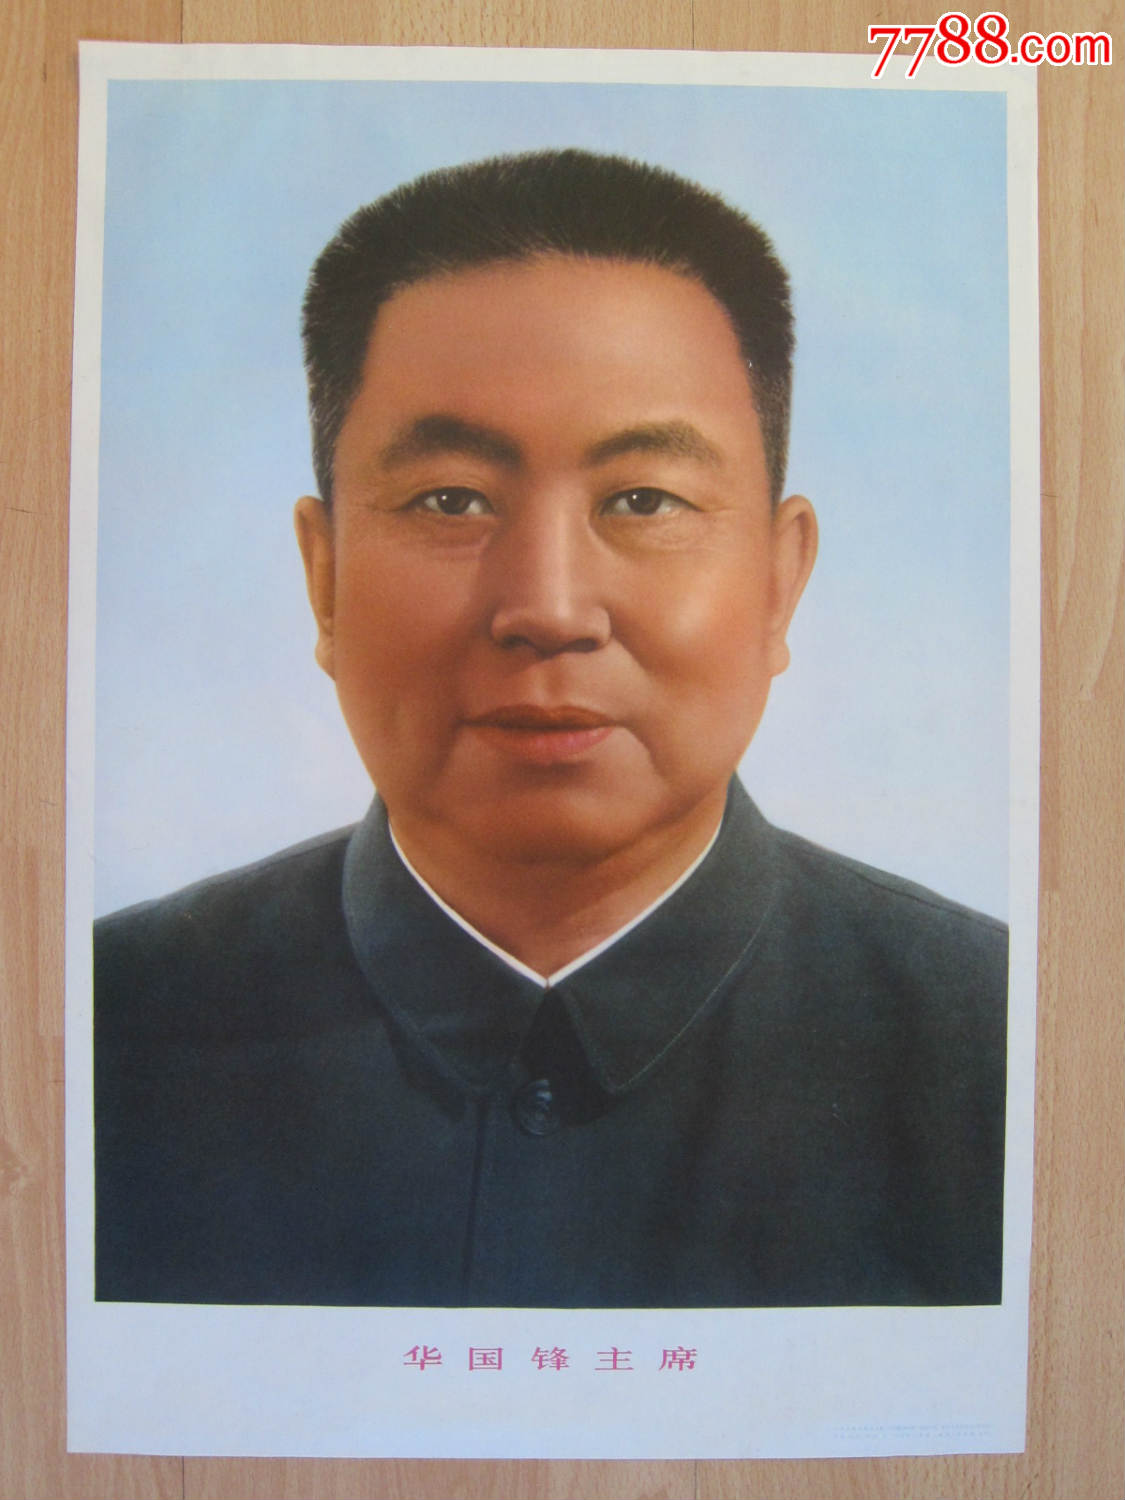 文革宣传画华国锋主席标准像,1976年北京第一版第一印